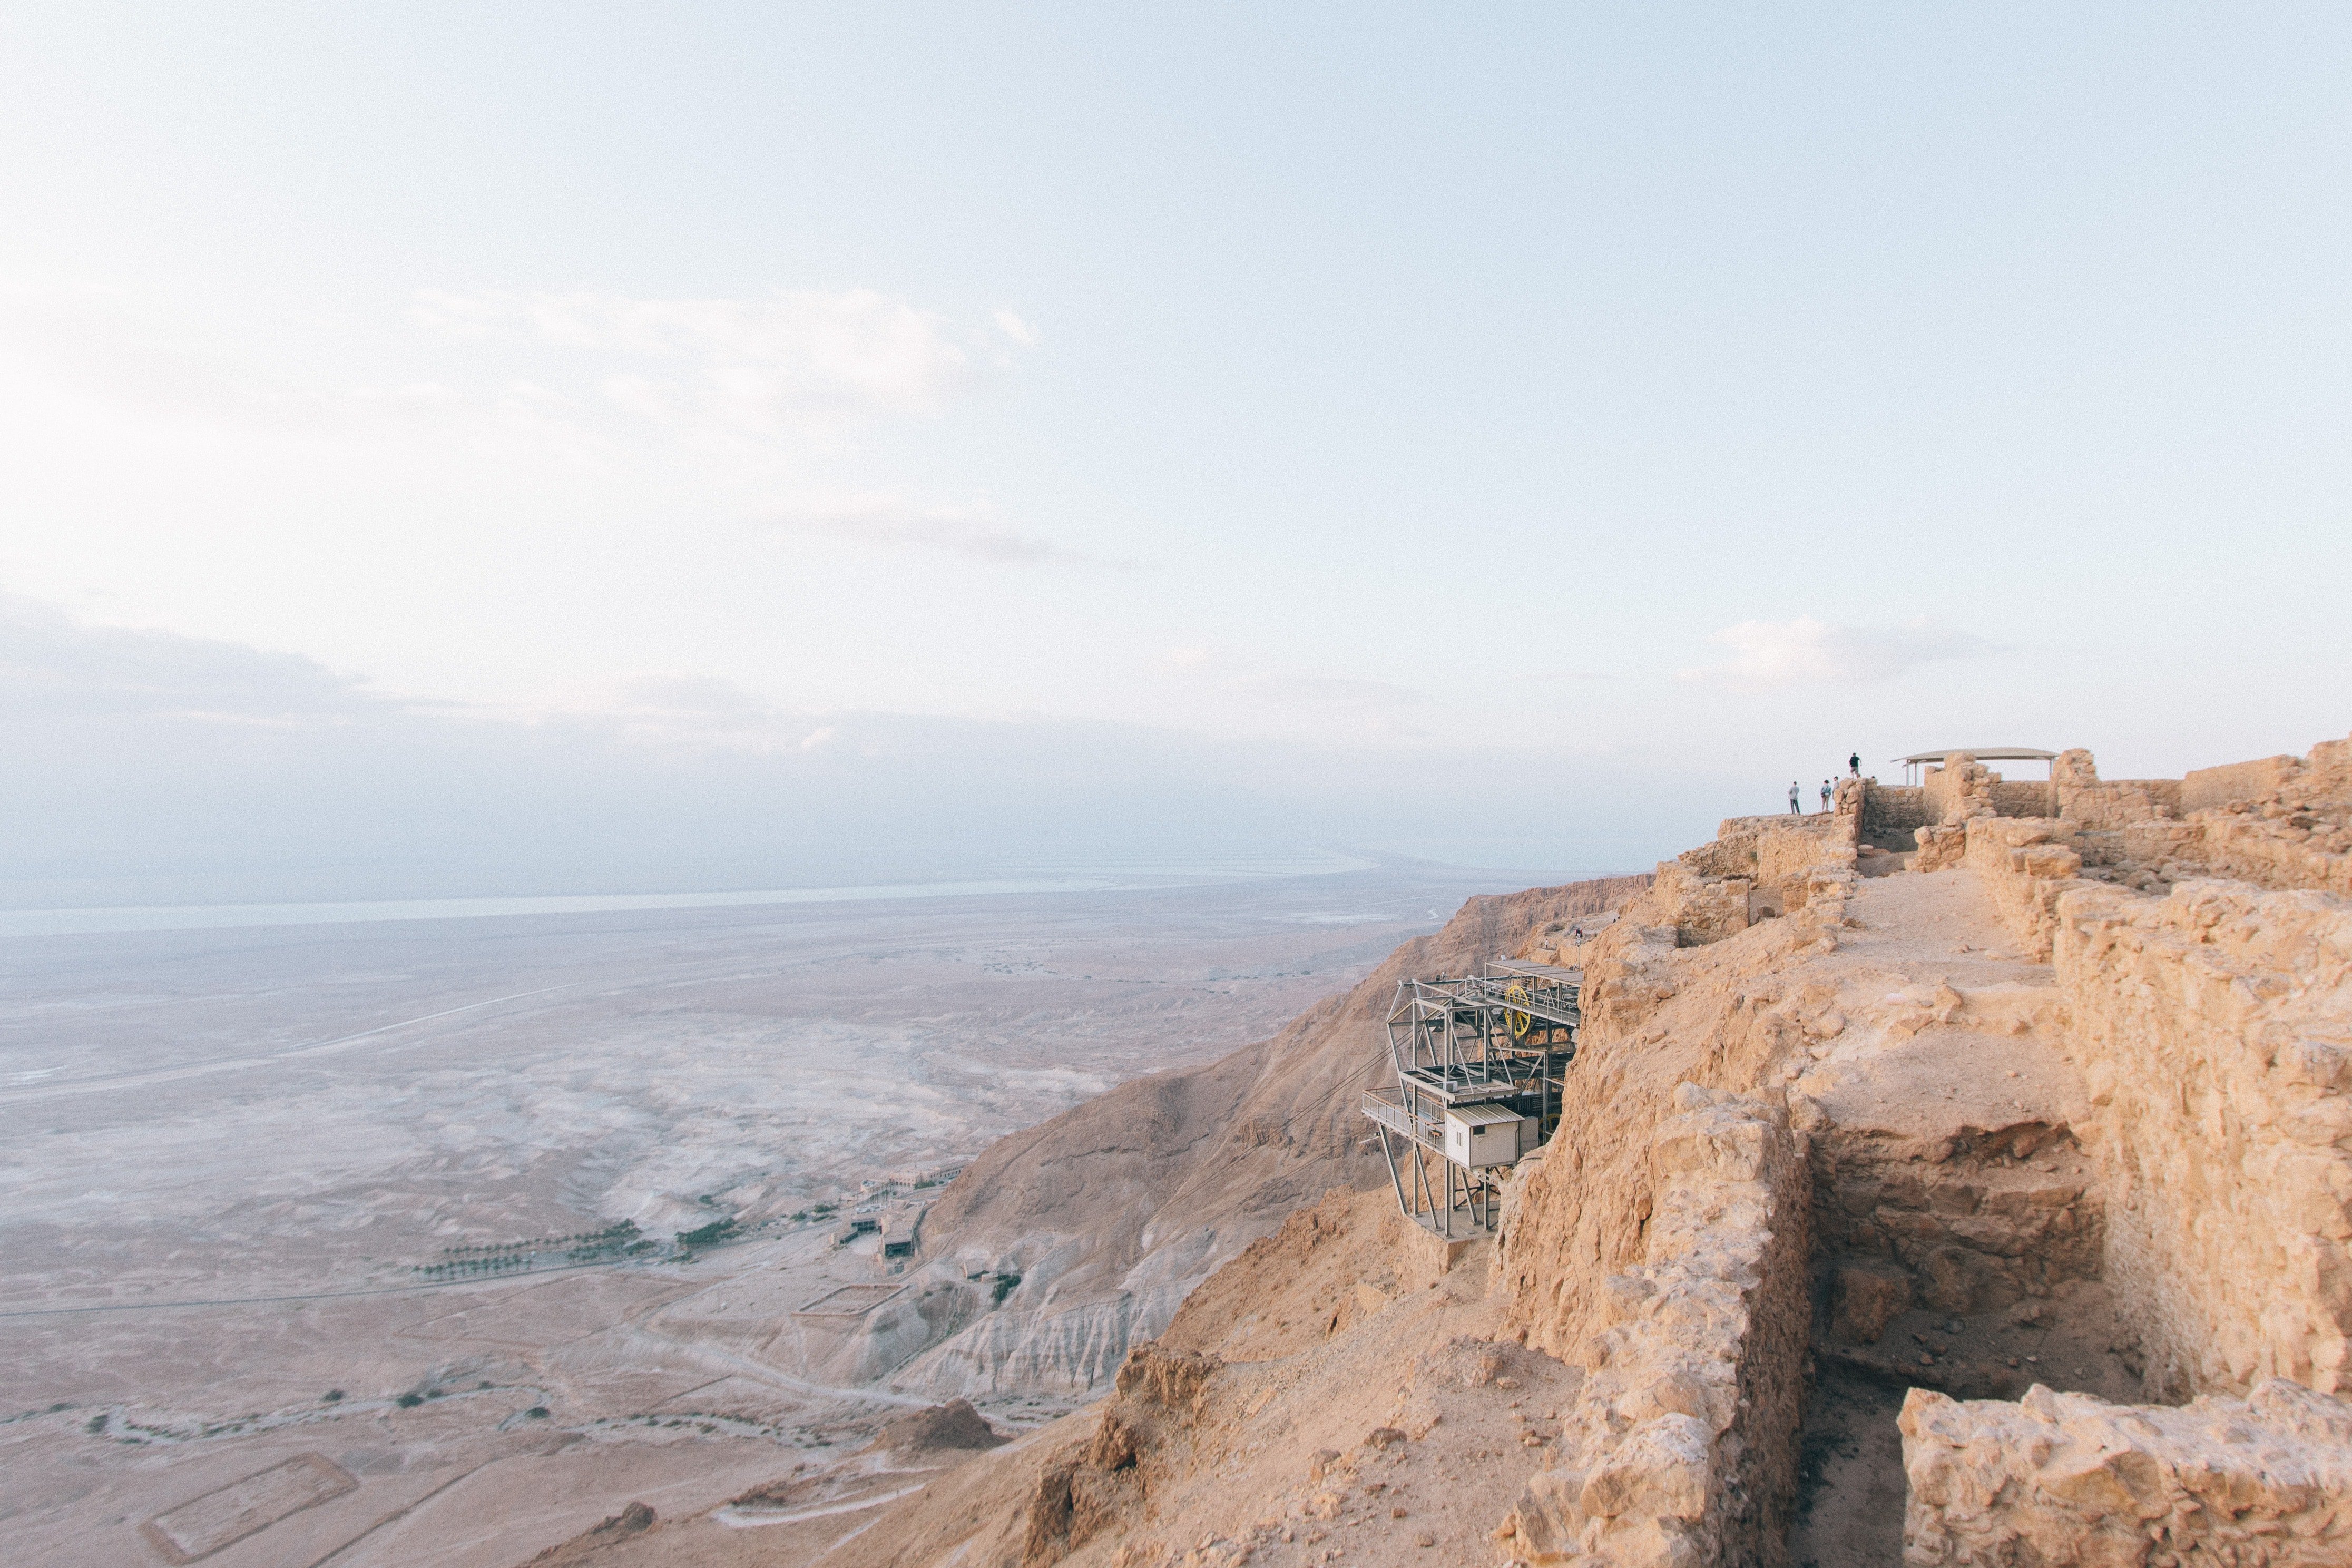 Masada National park, Israel.